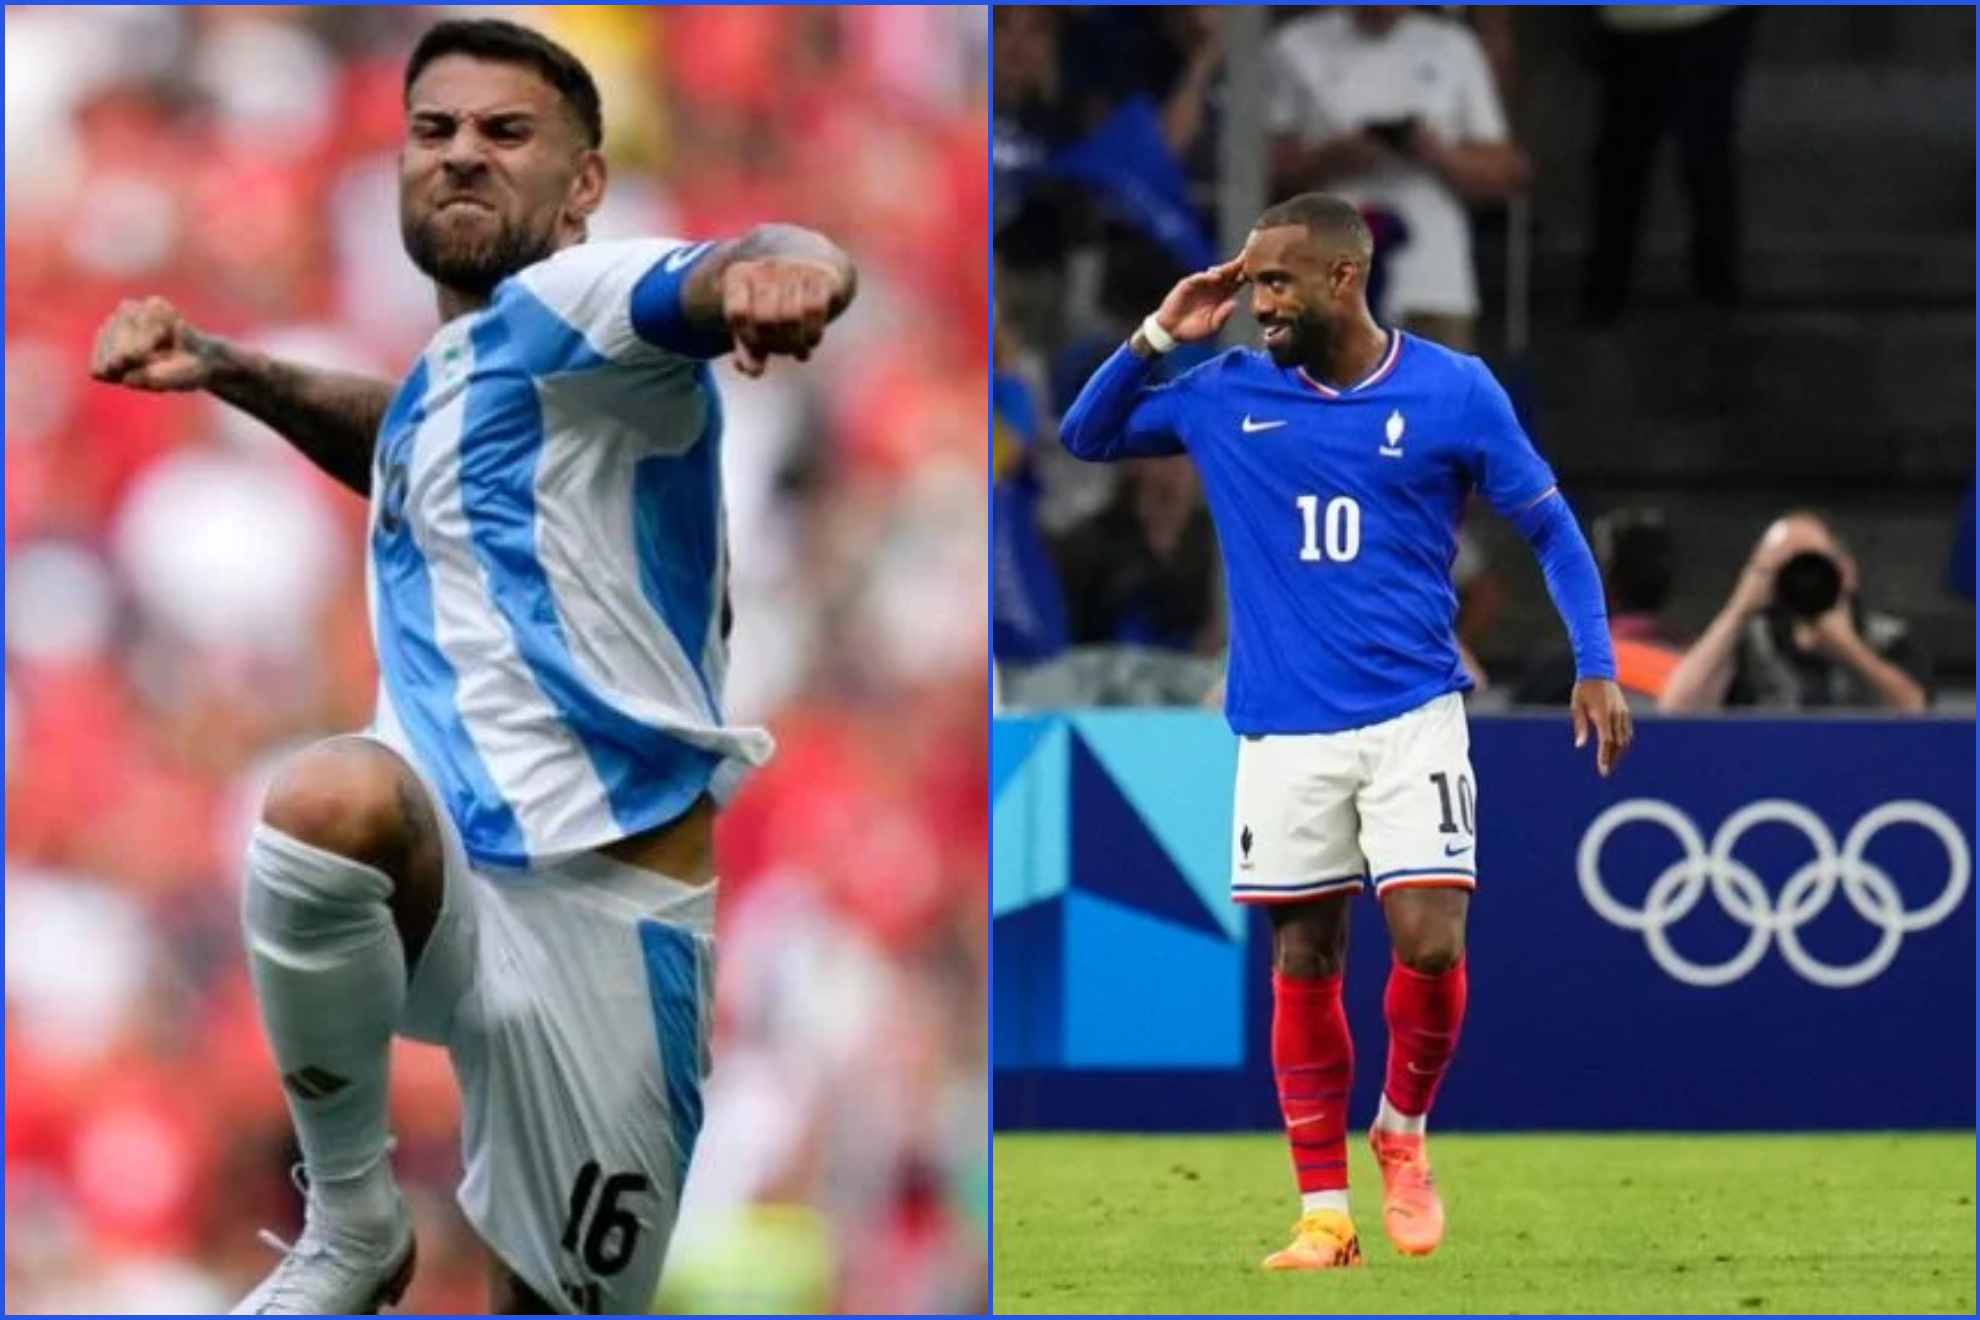 París 2024: Con Argentina vs Francia, cómo quedan 4tos de final de fútbol varonil en Olímpicos | MARCA México